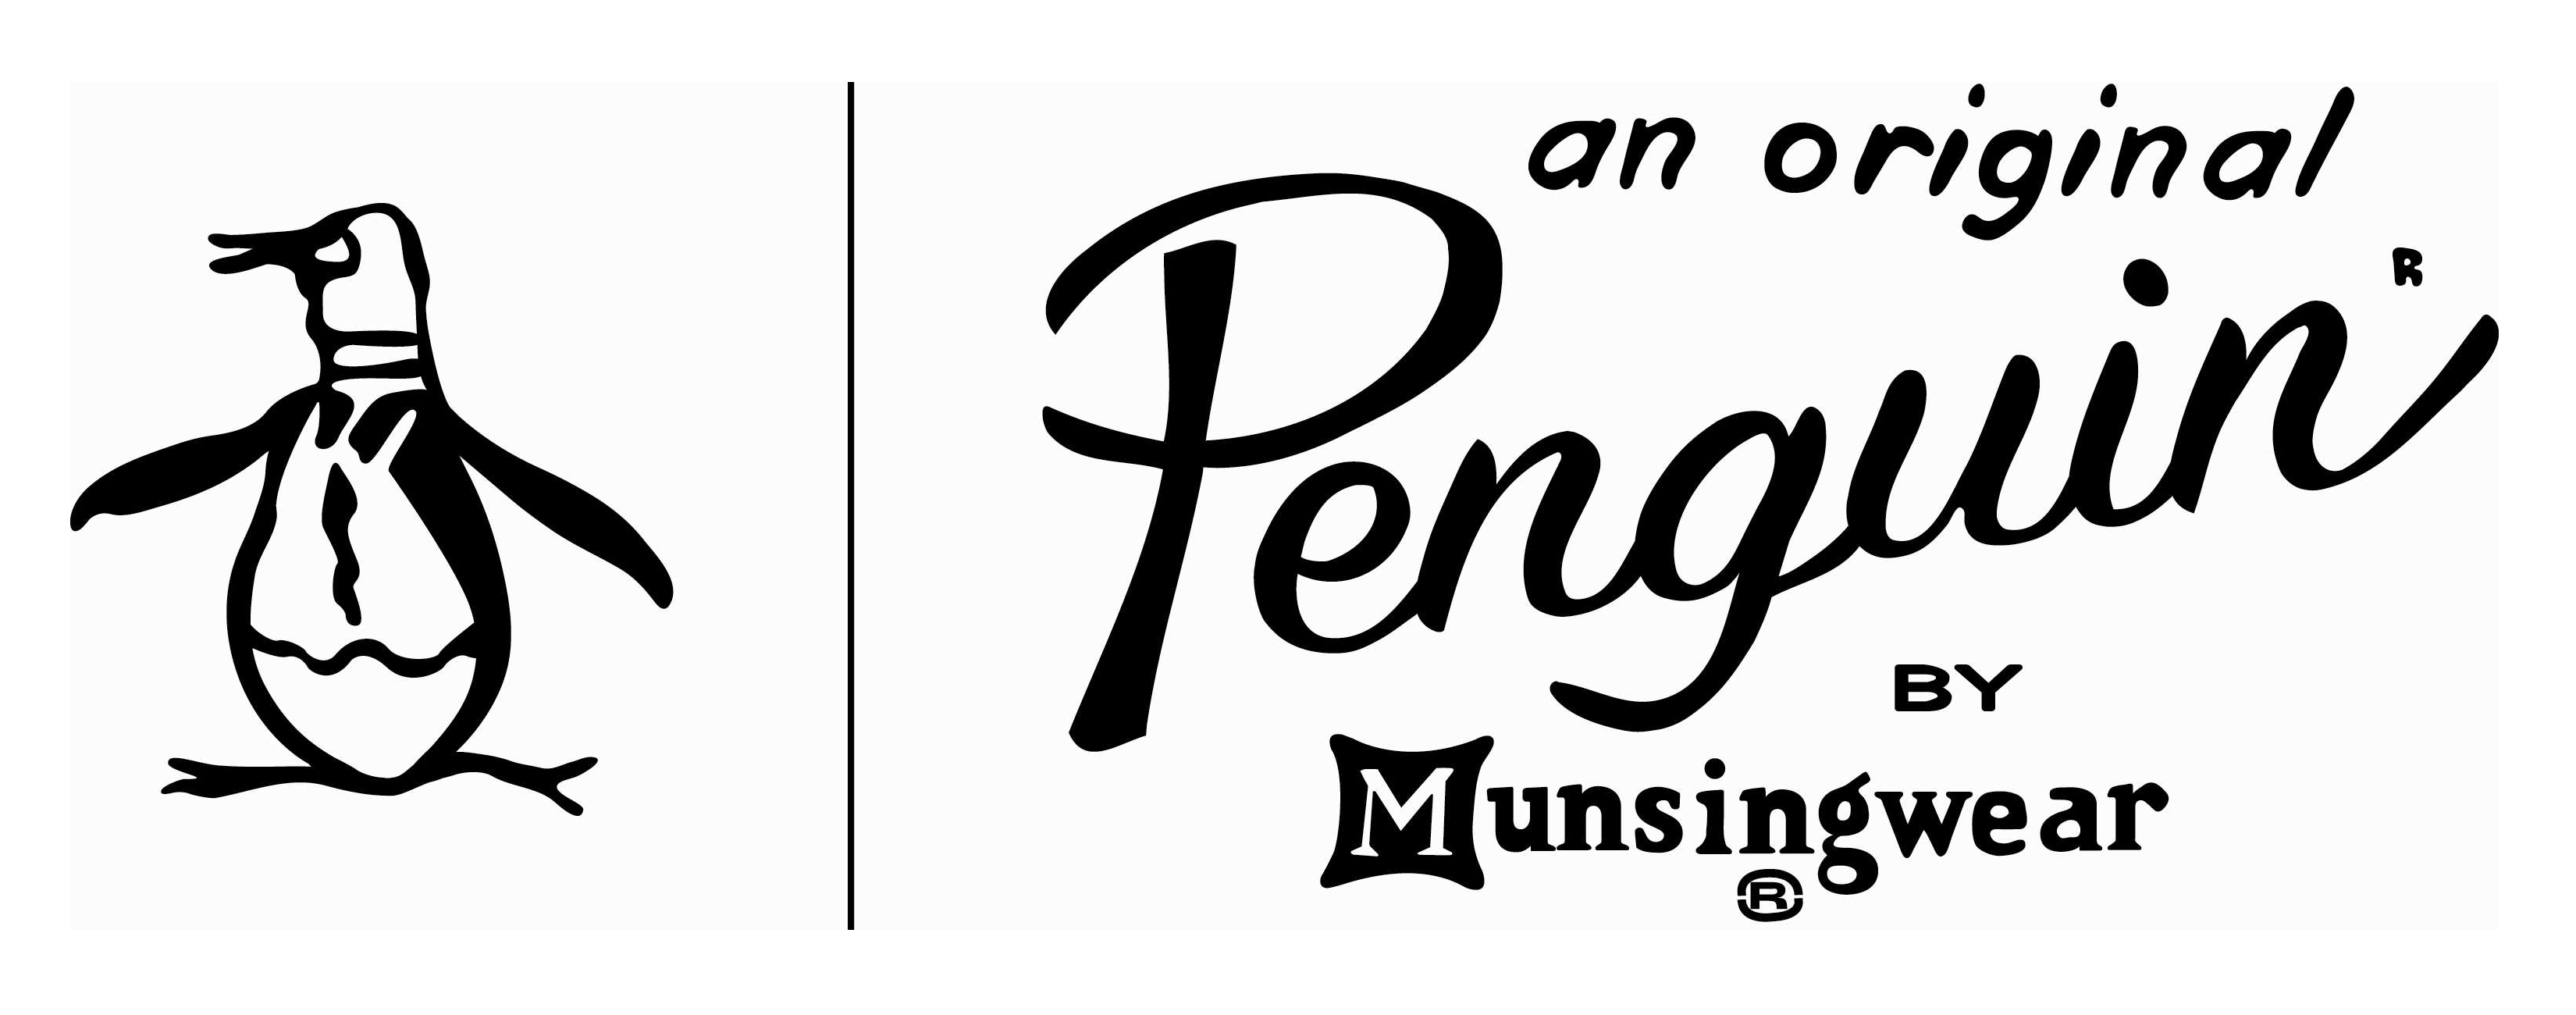 Original Penguin – Logos Download